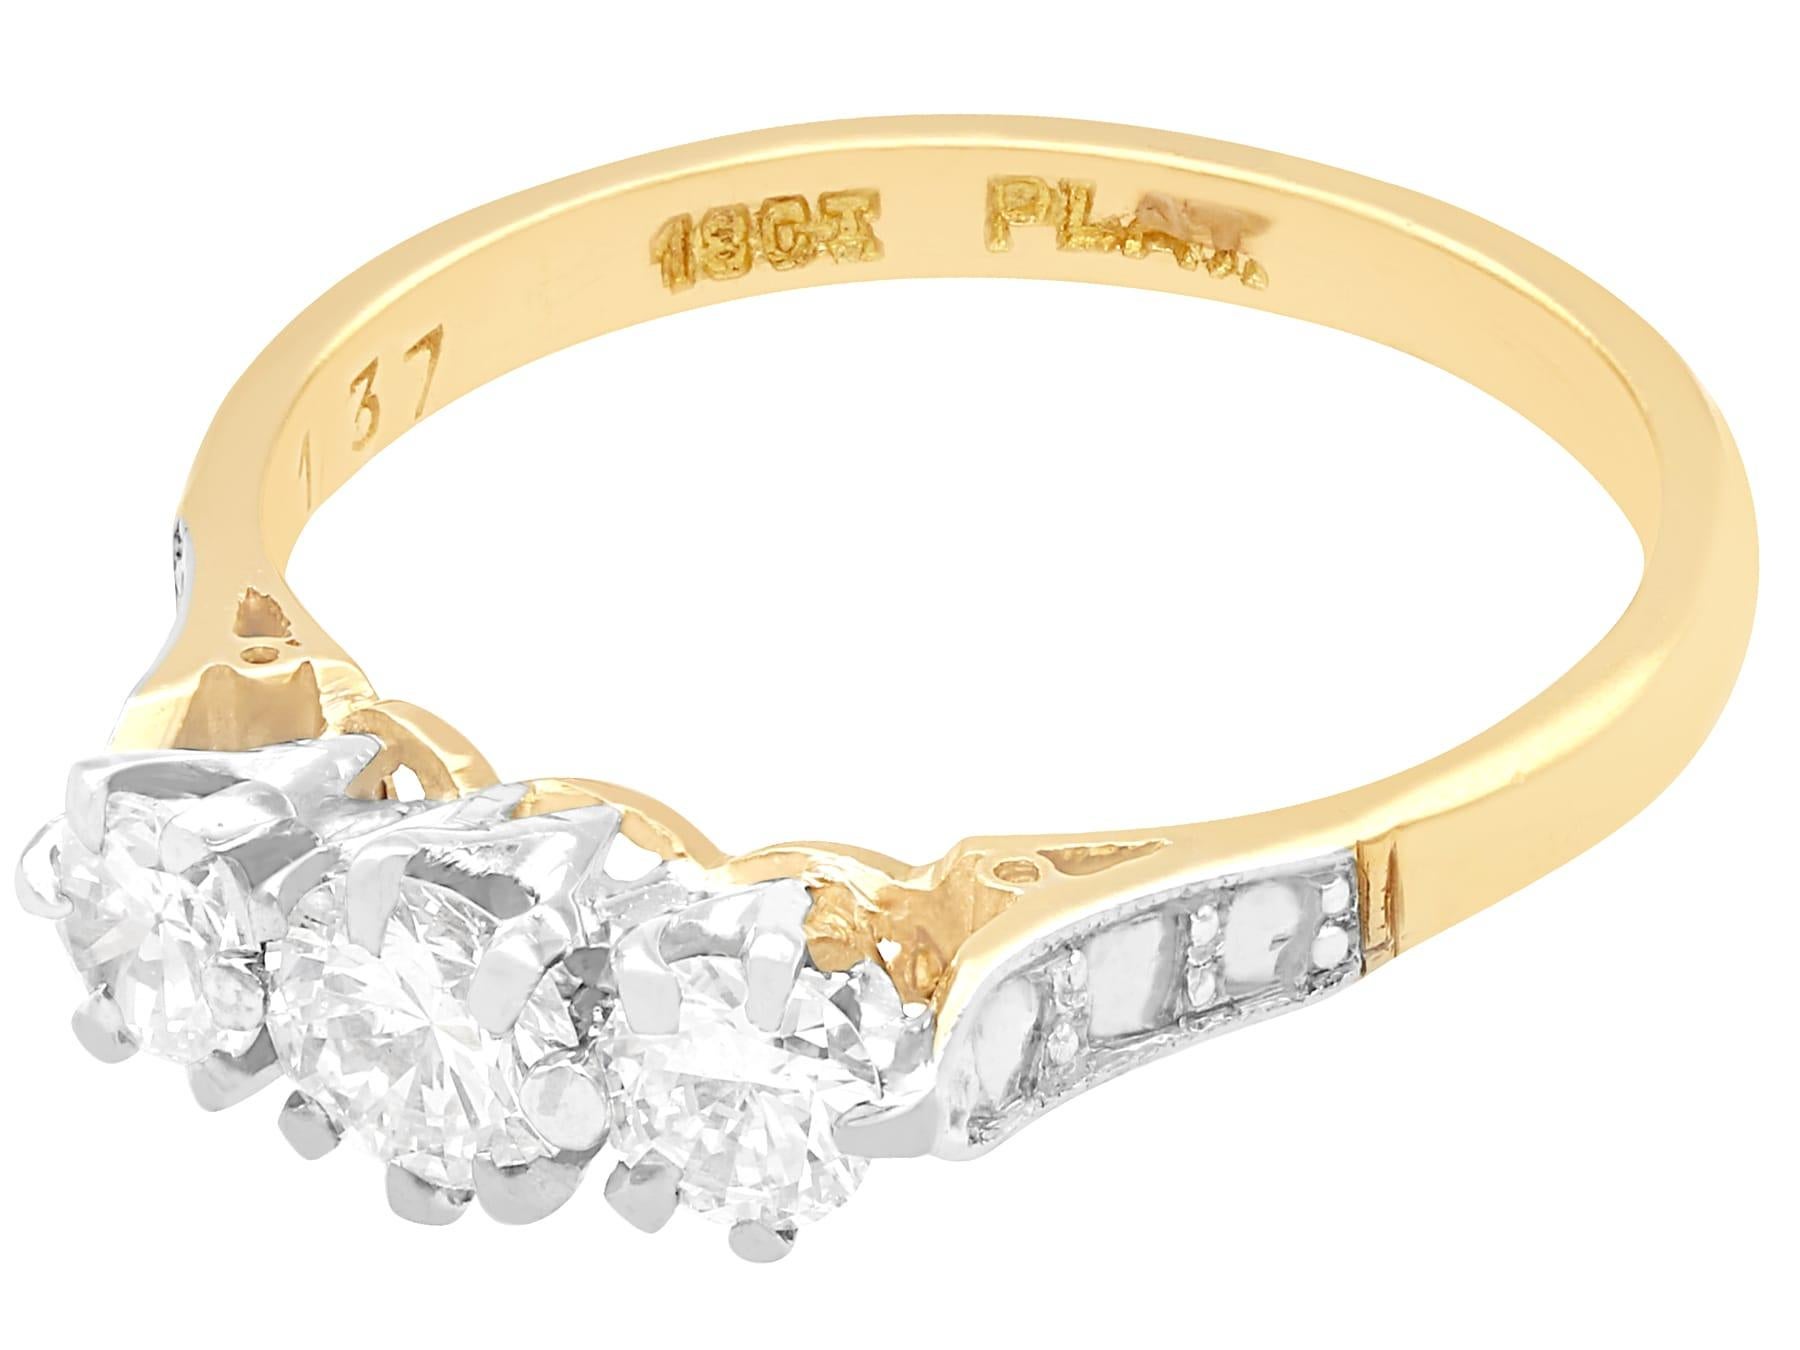 Ein feiner und beeindruckender antiker Ring mit 0,73 Karat Diamanten und 18 Karat Gelbgold und drei Steinen in Platin; Teil unserer vielfältigen Diamantschmuck- und Nachlassschmuck-Kollektionen.

Dieser feine und beeindruckende Diamant-Trilogie-Ring